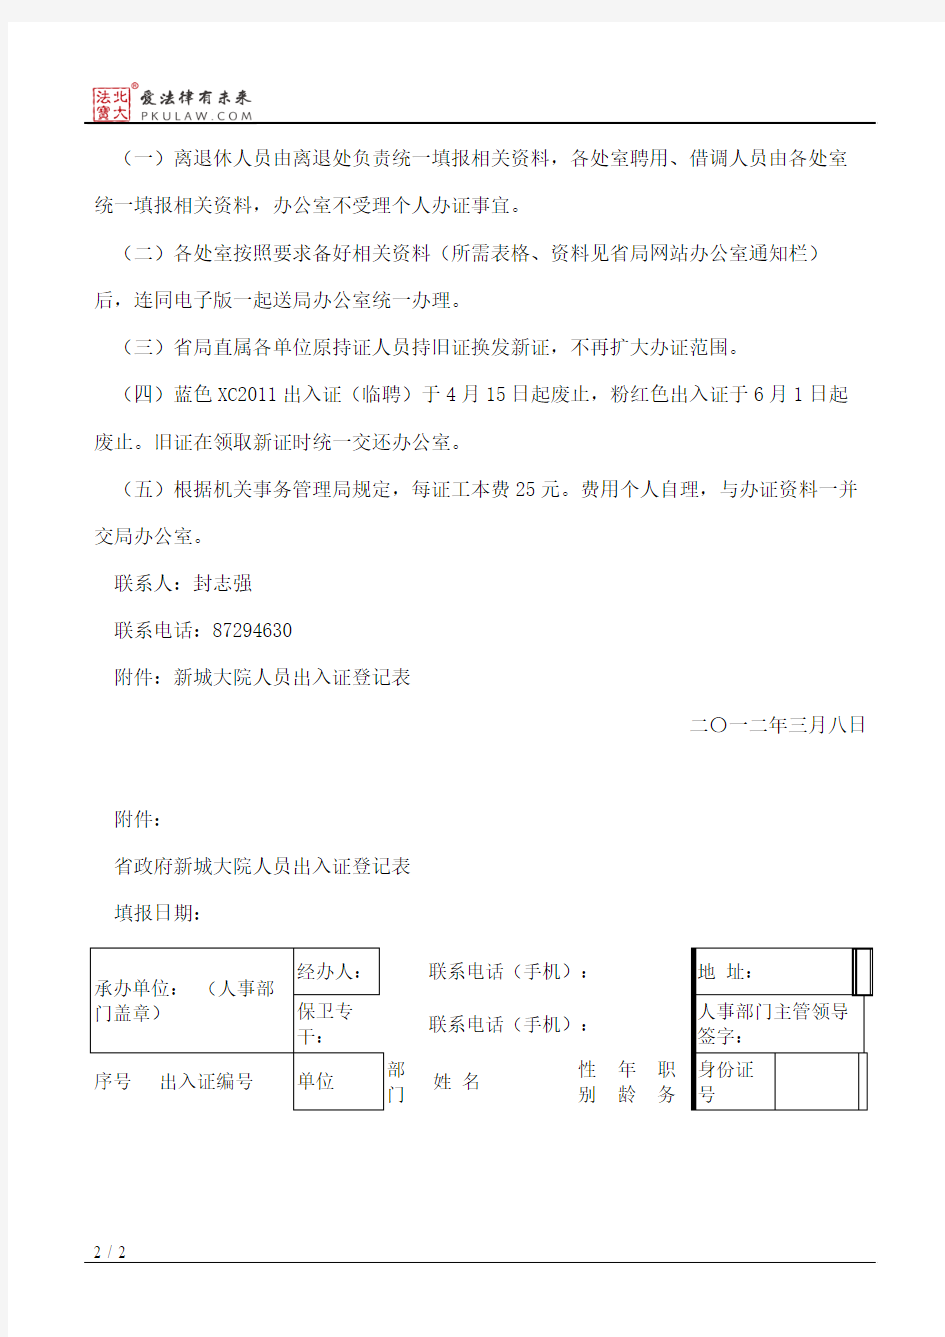 陕西省质量技术监督局关于换发省政府新城大院人员出入证有关事项的通知